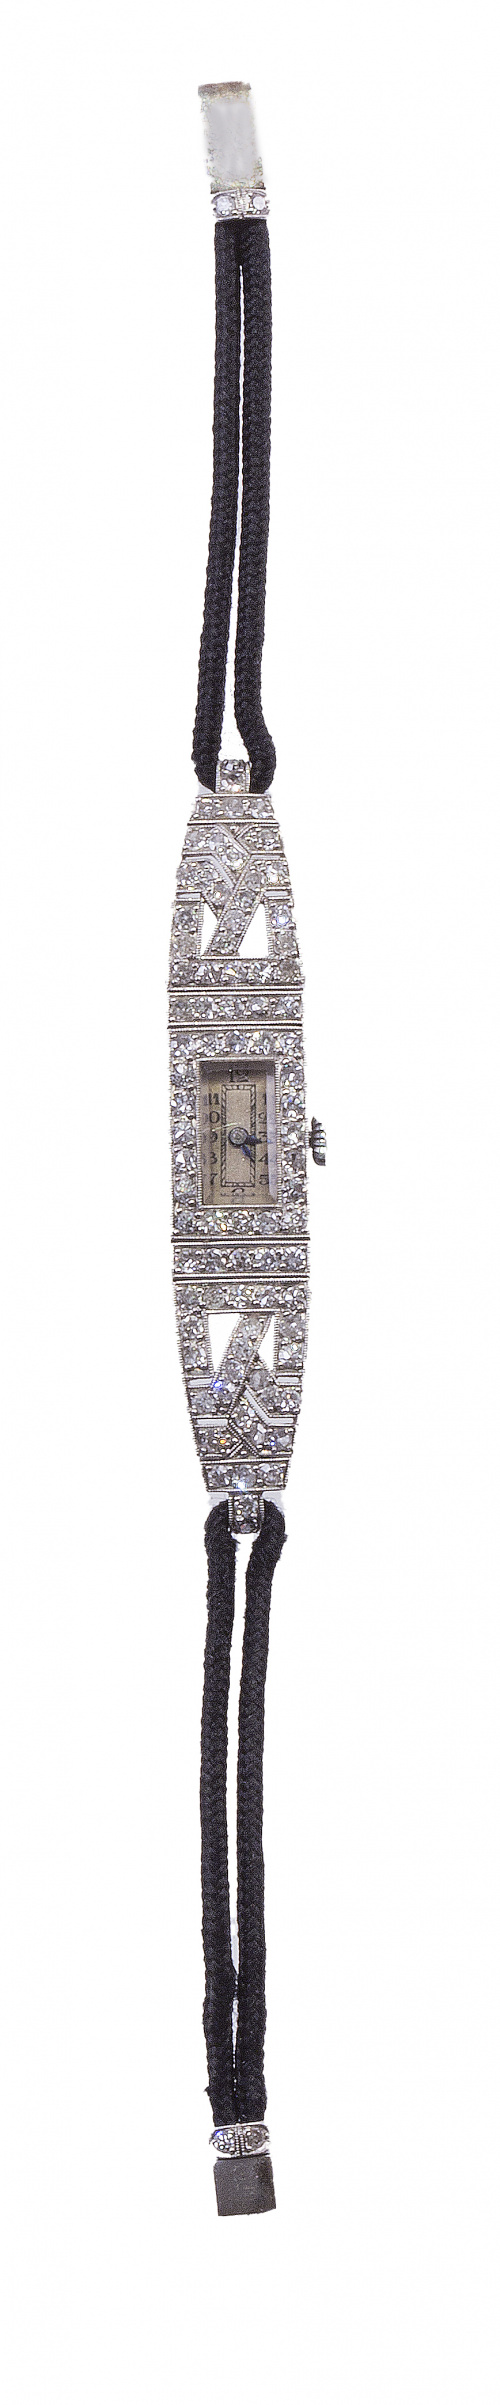 Reloj de pulsera Art-Decó de platino y brillantes